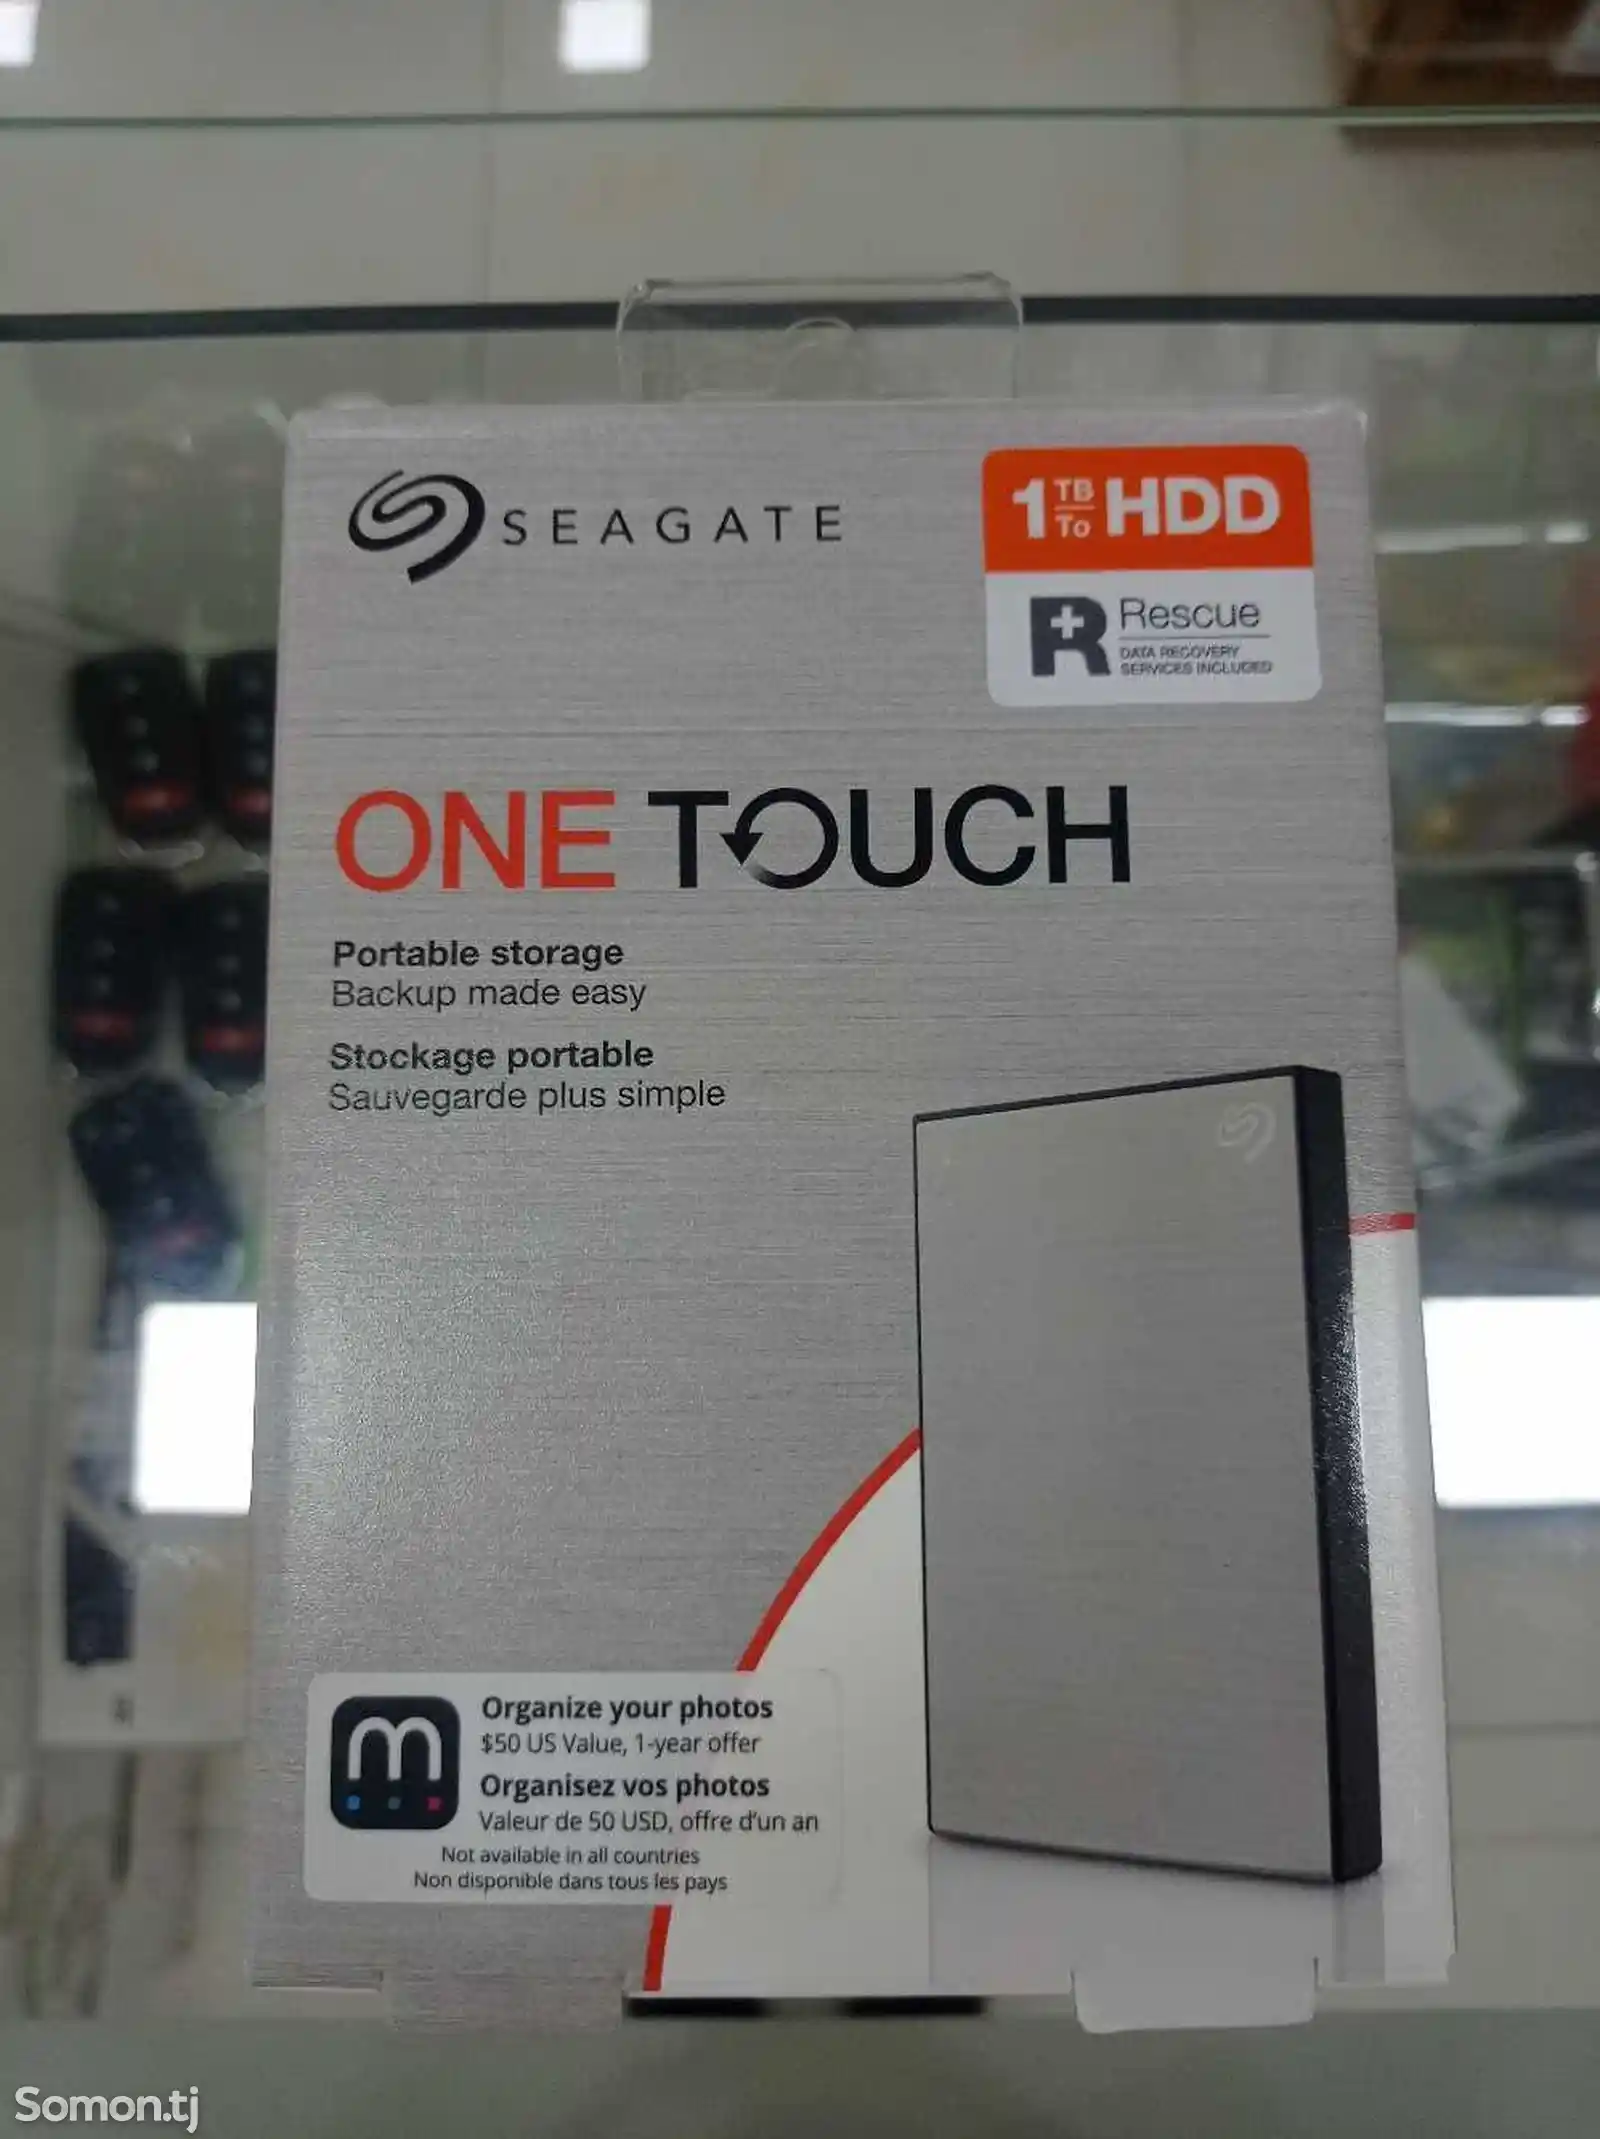 One Touch 1 TB HDD жёсткий диск